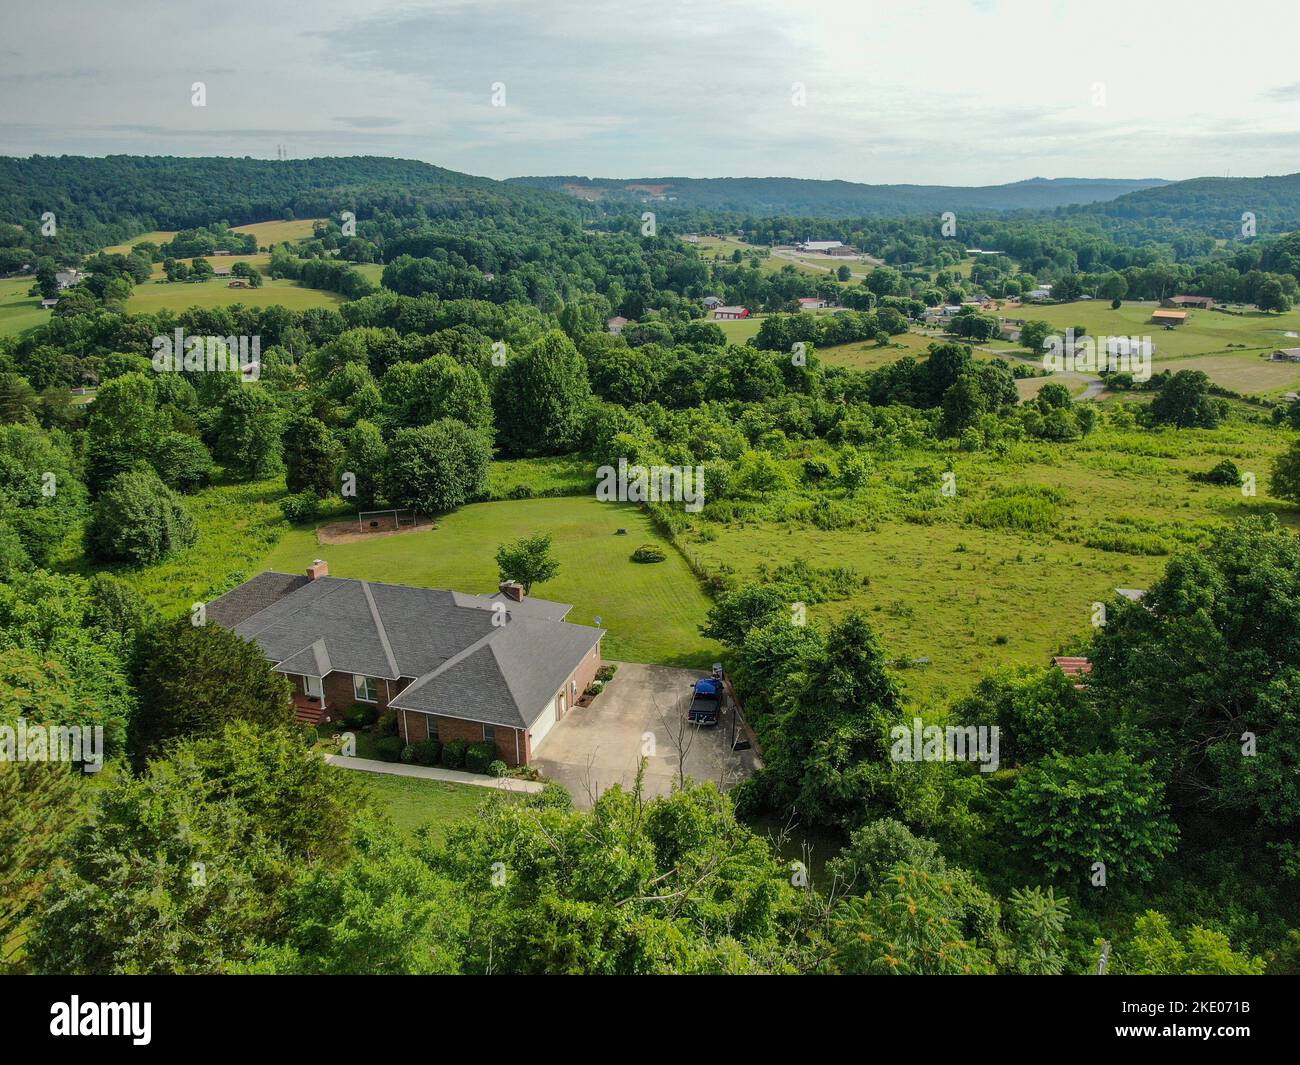 Une vue aérienne d'une maison sur un pré vert à Cookeville, Tennessee, entouré d'arbres, de champs agricoles, et d'une montagne boisée en arrière-plan Banque D'Images